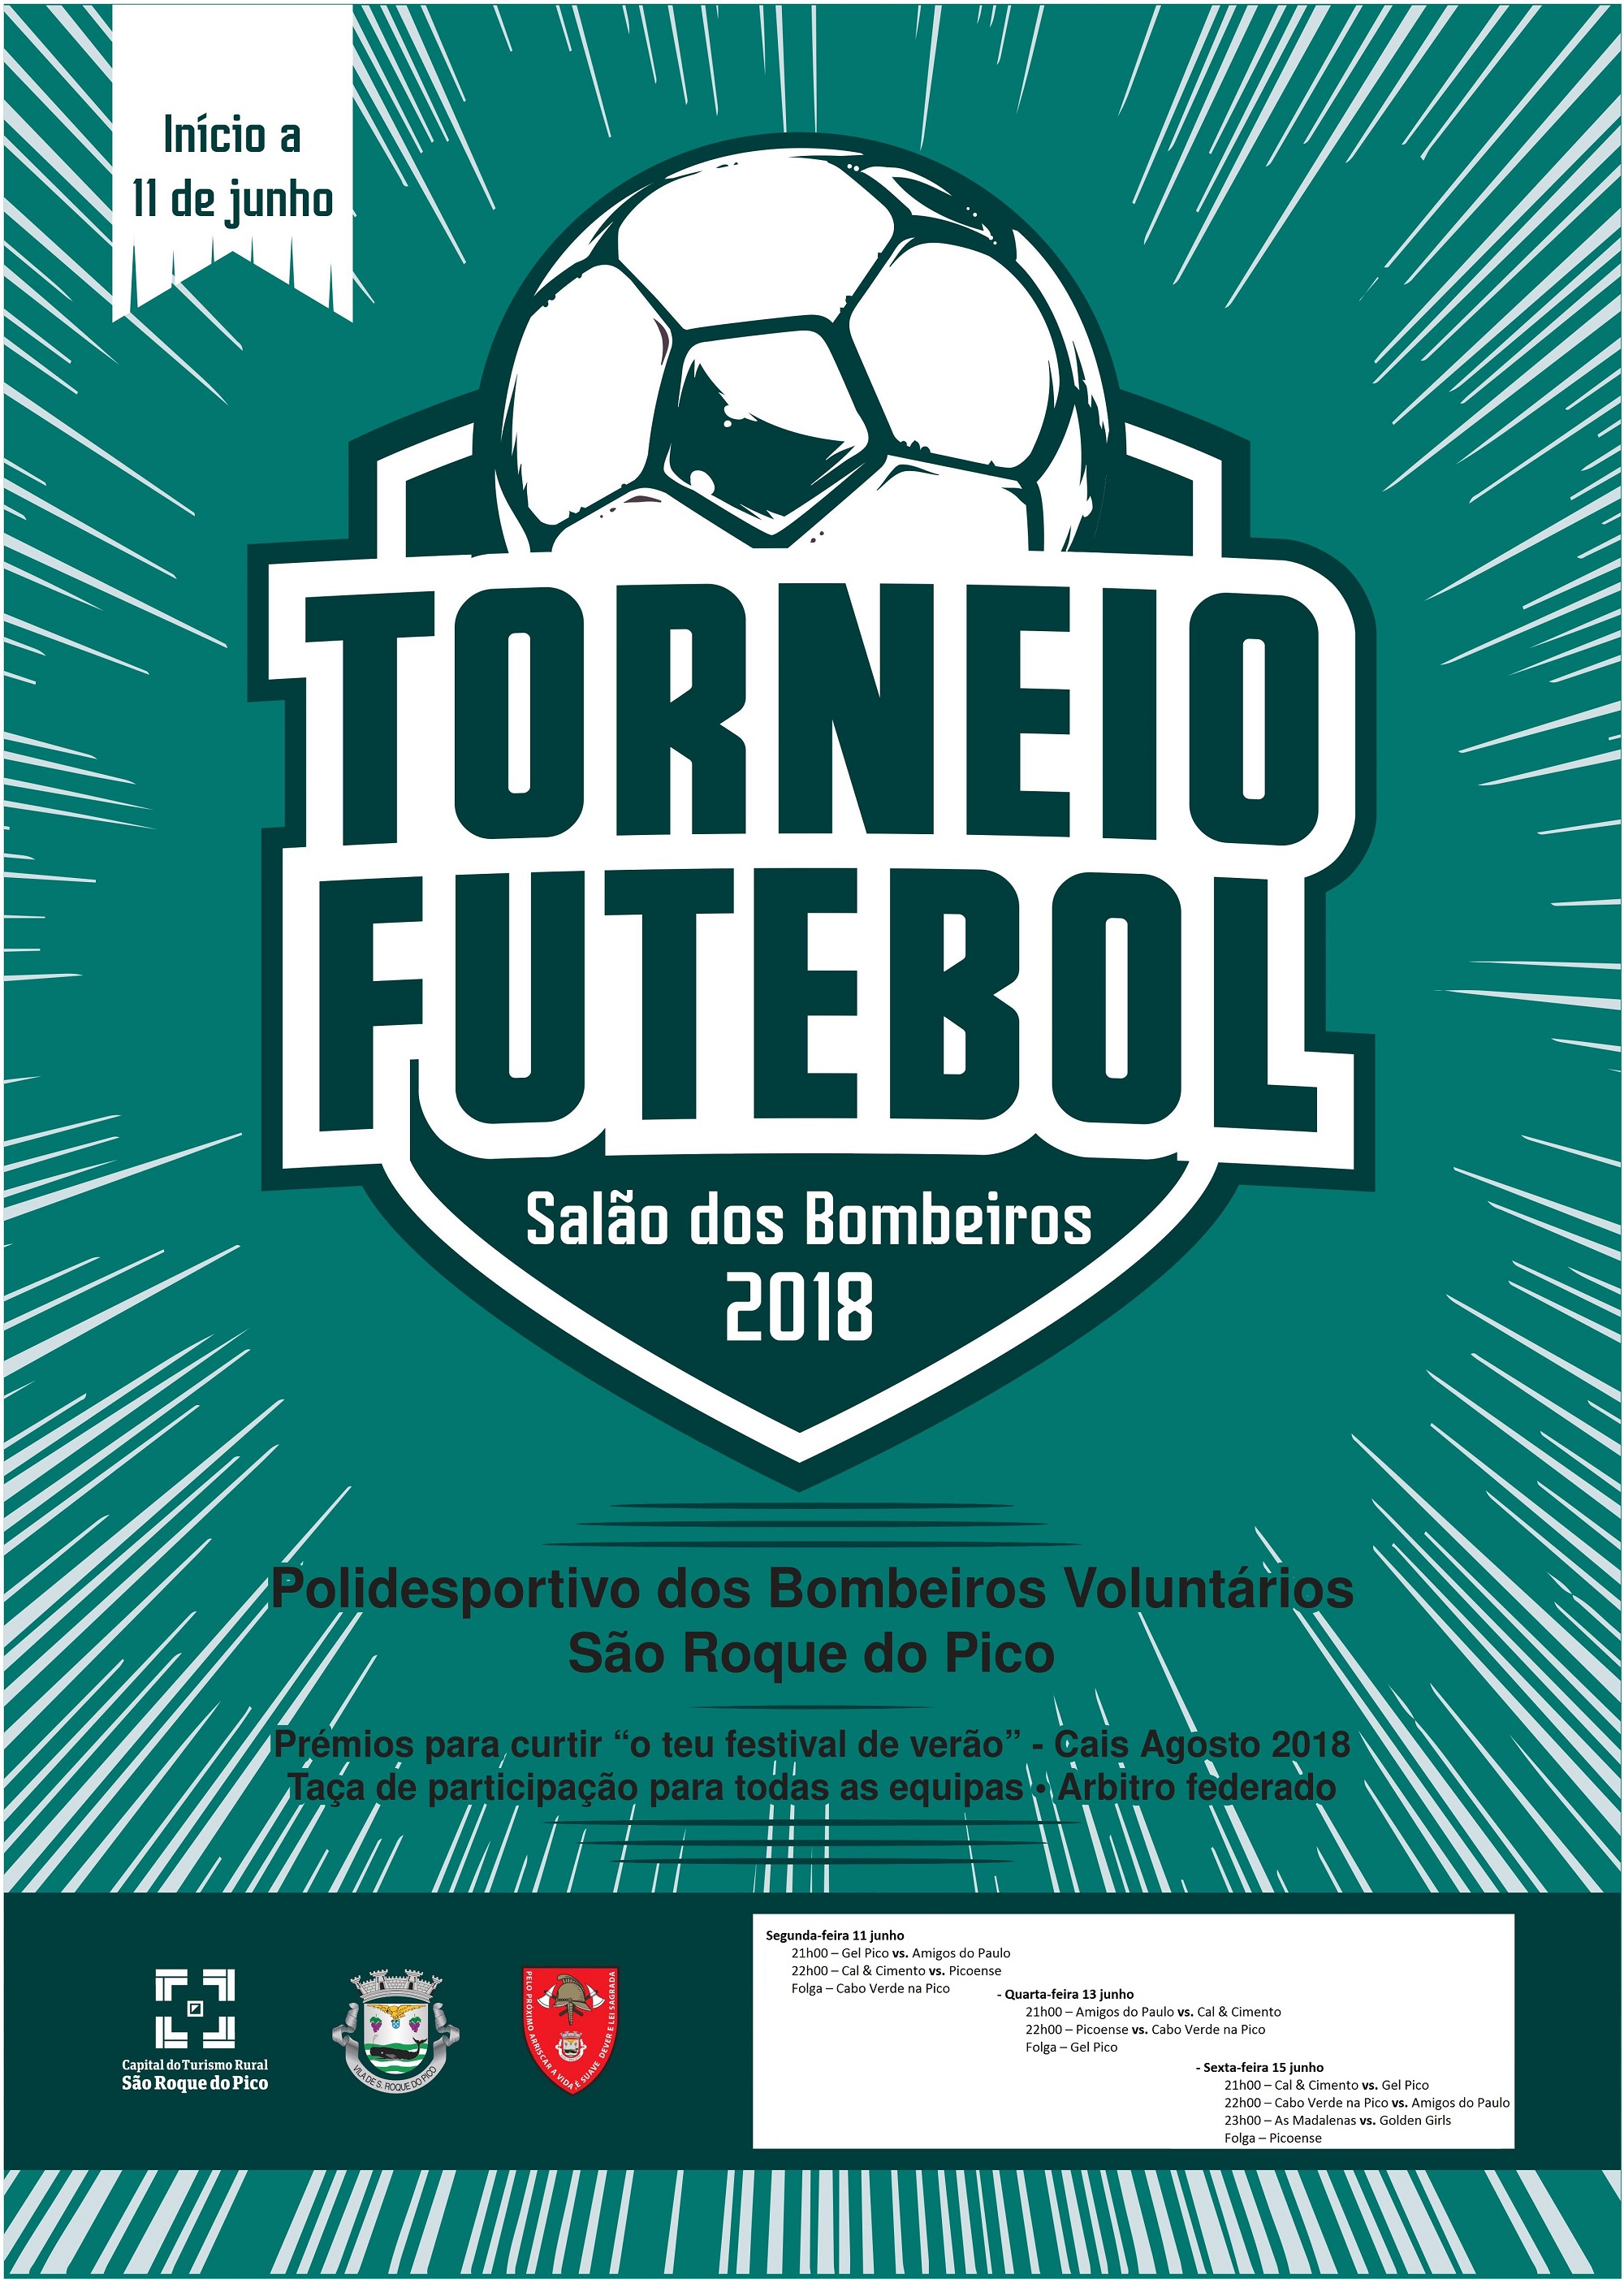 Torneio Futebol Salão dos Bombeiros inicia na próxima segunda feira dia 11 de junho